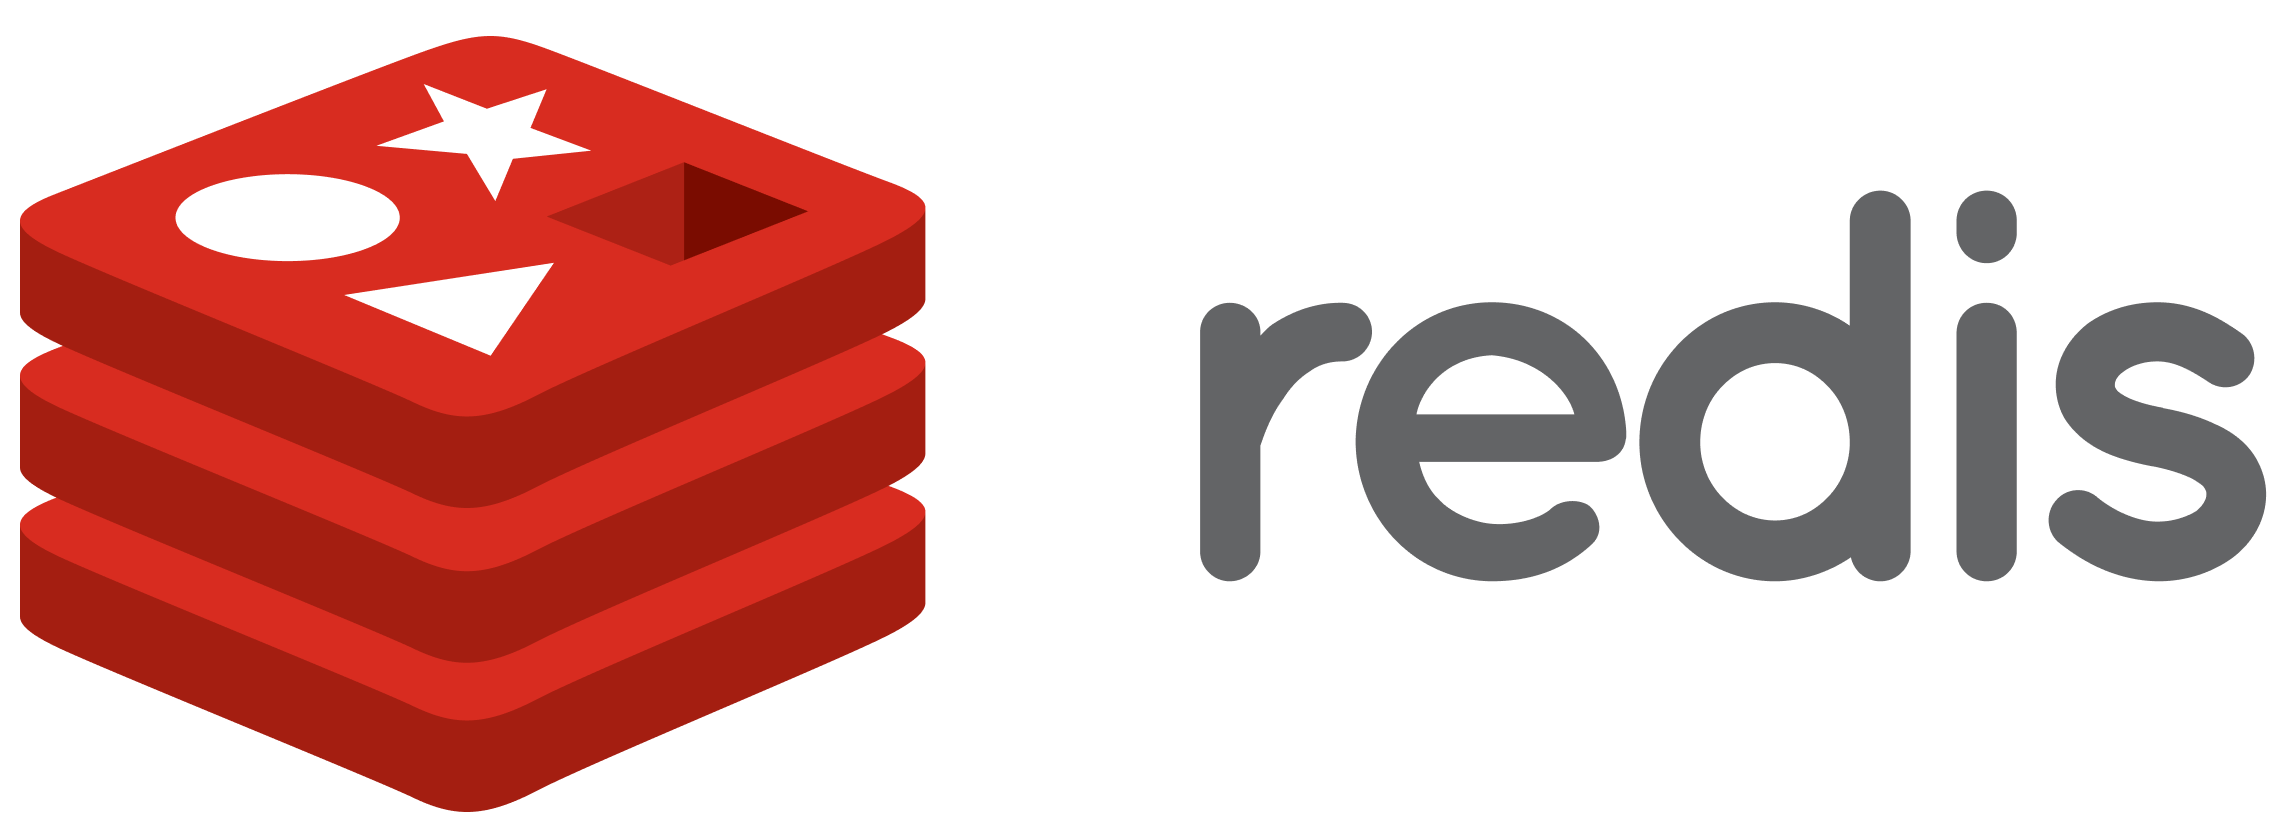 redis-logo-cropped.png